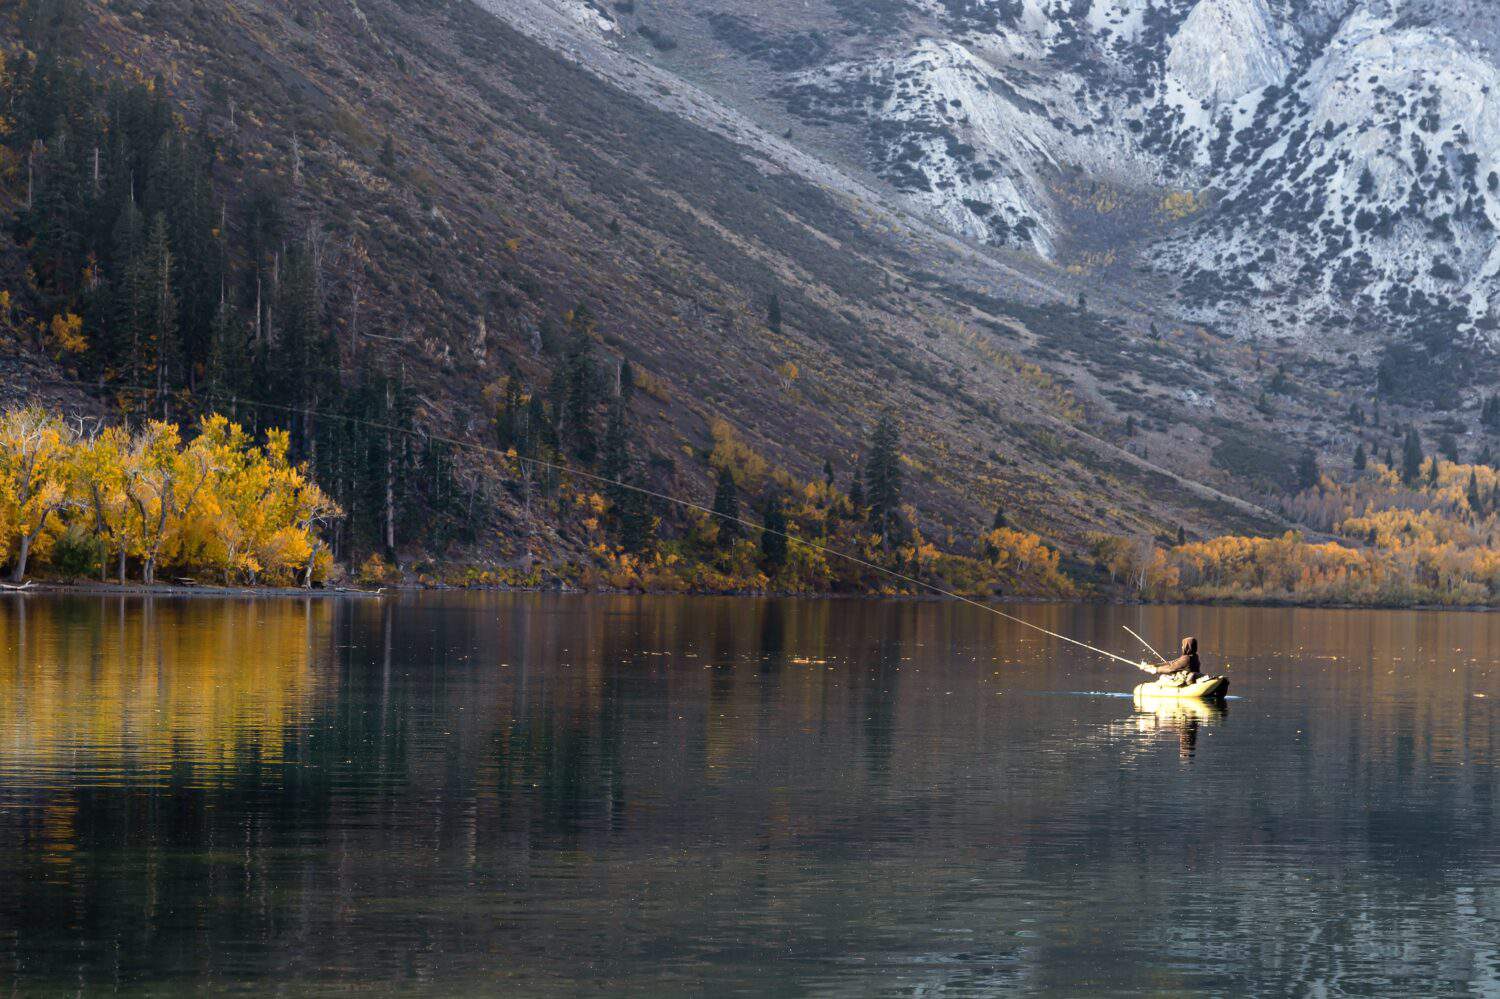 Man fishing on lake with fall foliage